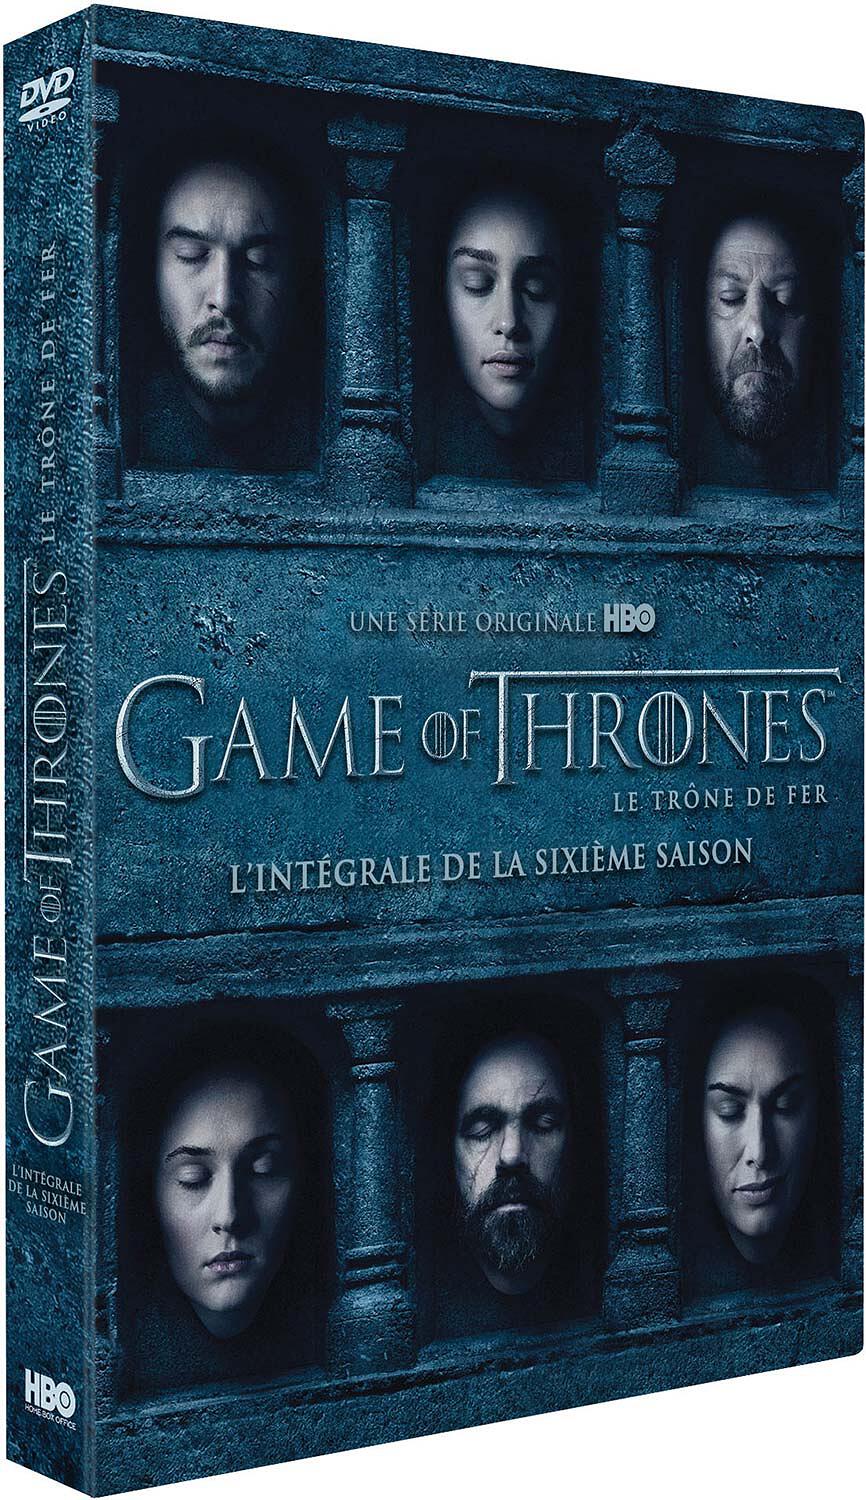 Couverture de : Game of Thrones Saison 6, épisodes 1 et 2 : Le Trône de Fer